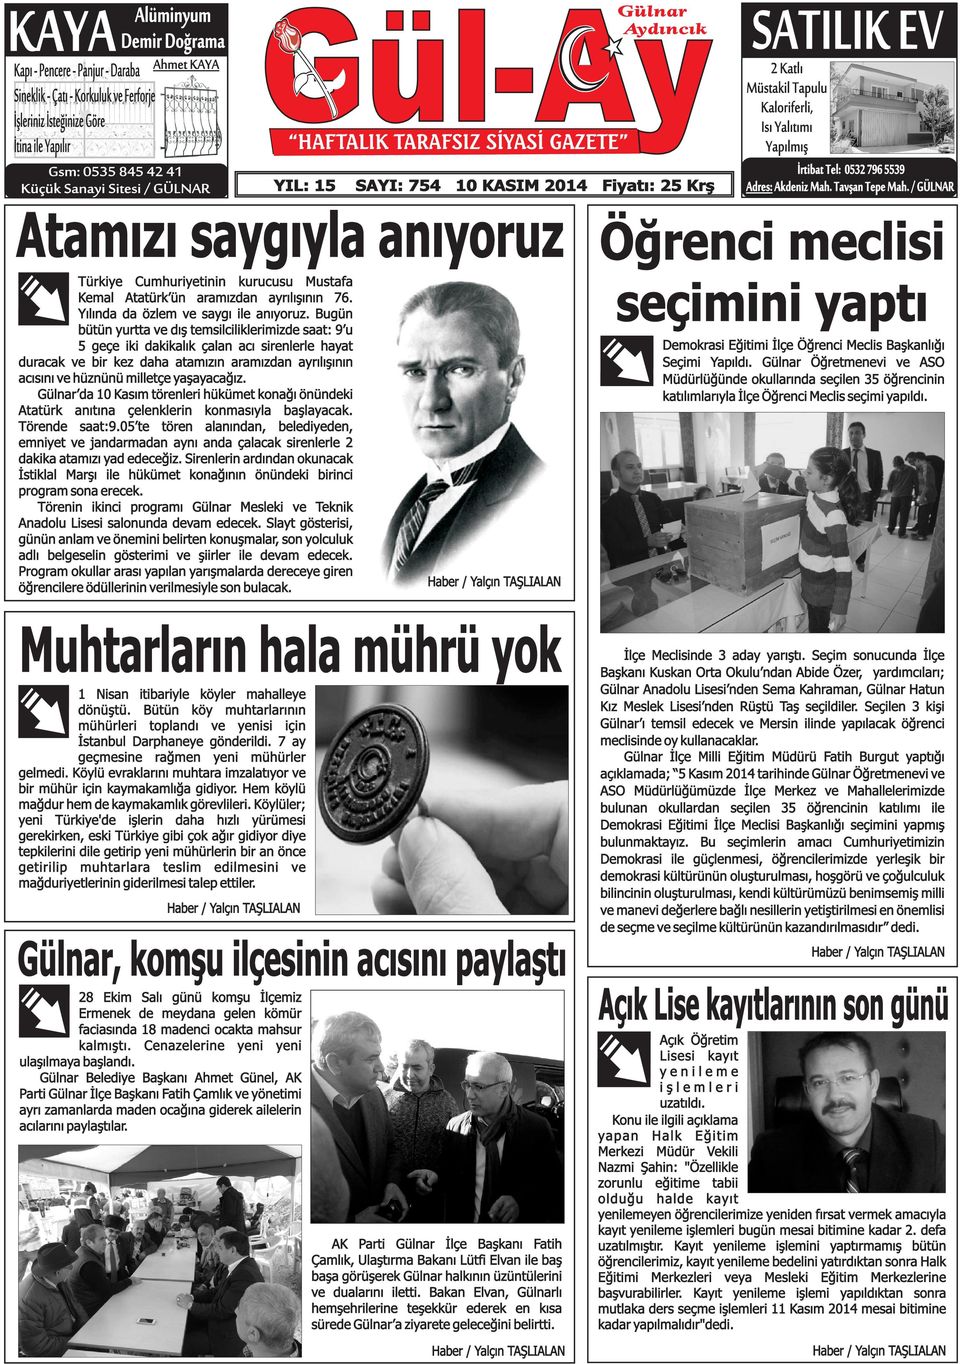 796 5539 Adres: Akdeniz Mah. Tavşan Tepe Mah. / GÜLNAR Atamızı saygıyla anıyoruz Öğrenci meclisi Türkiye Cumhuriyetinin kurucusu Mustafa Kemal Atatürk ün aramızdan ayrılışının 76.